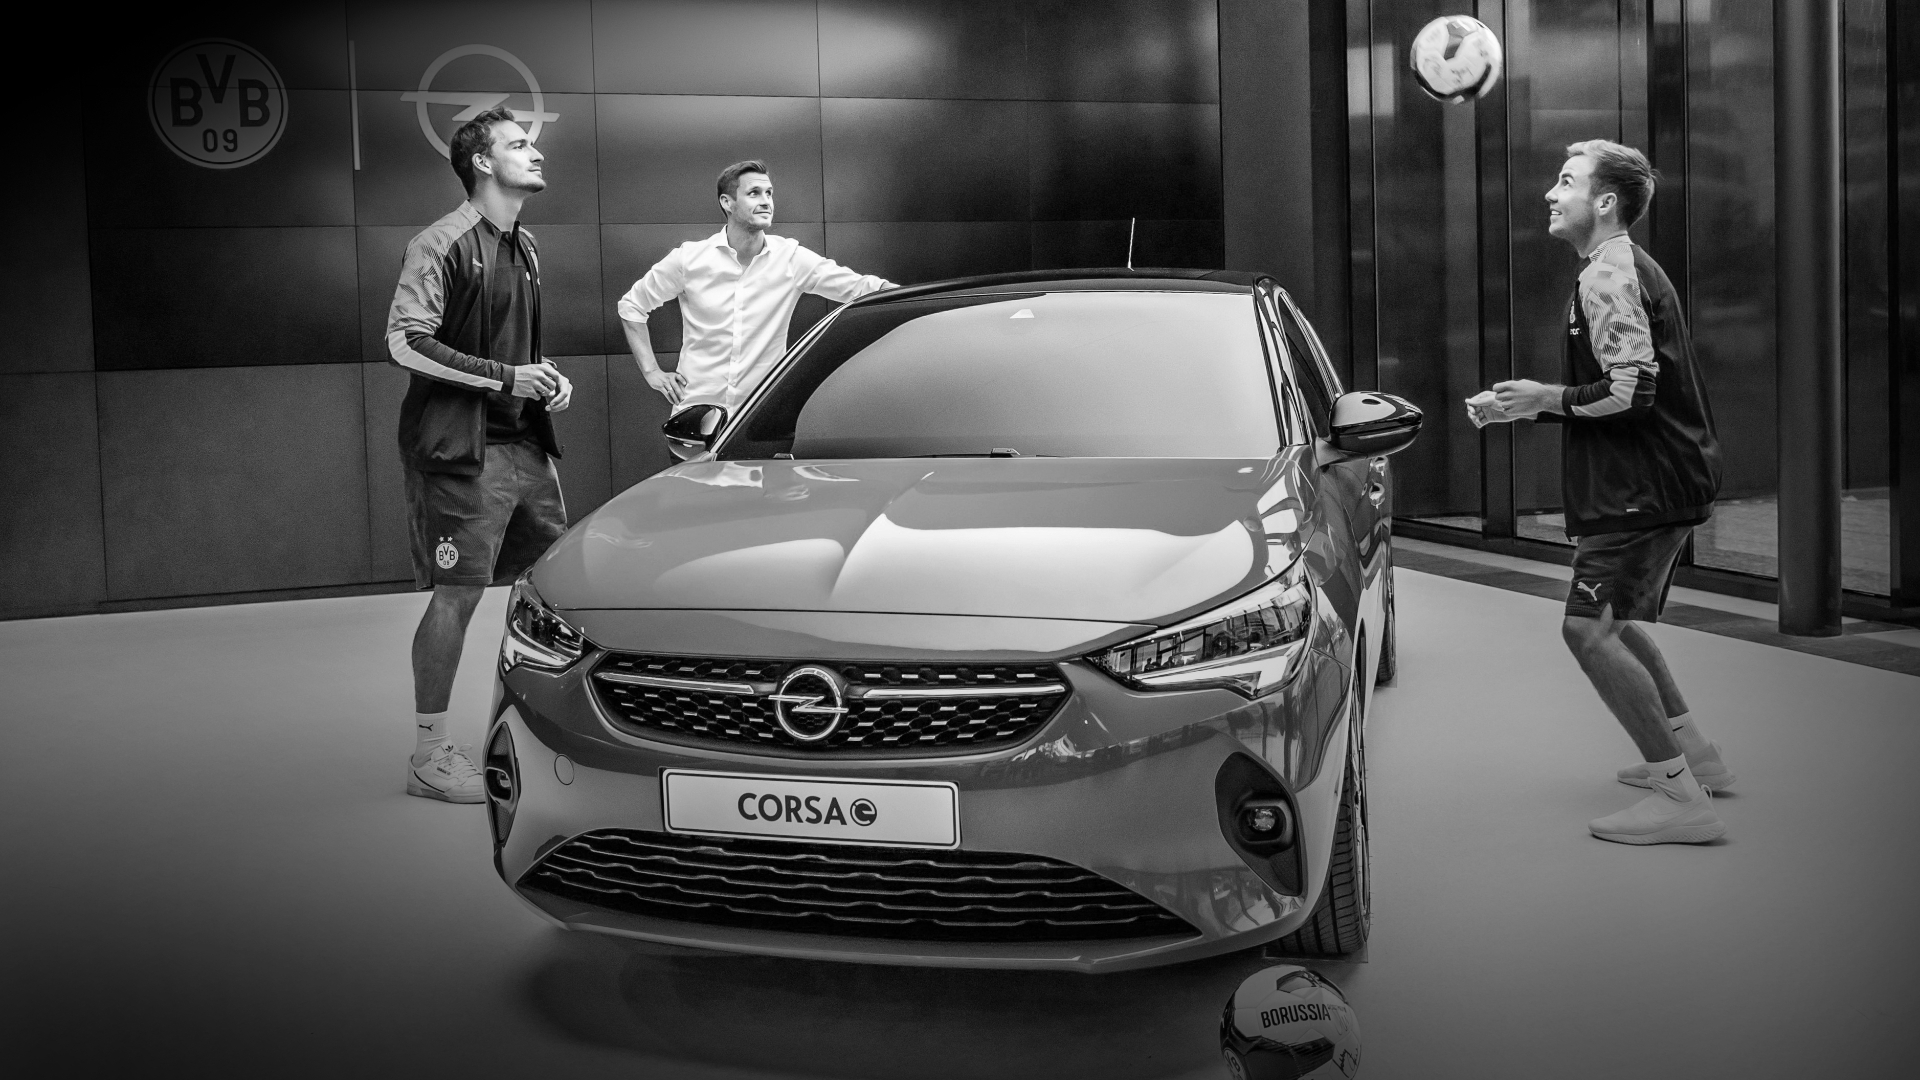 Werbekampagne Opel mit Markenbotschaftern